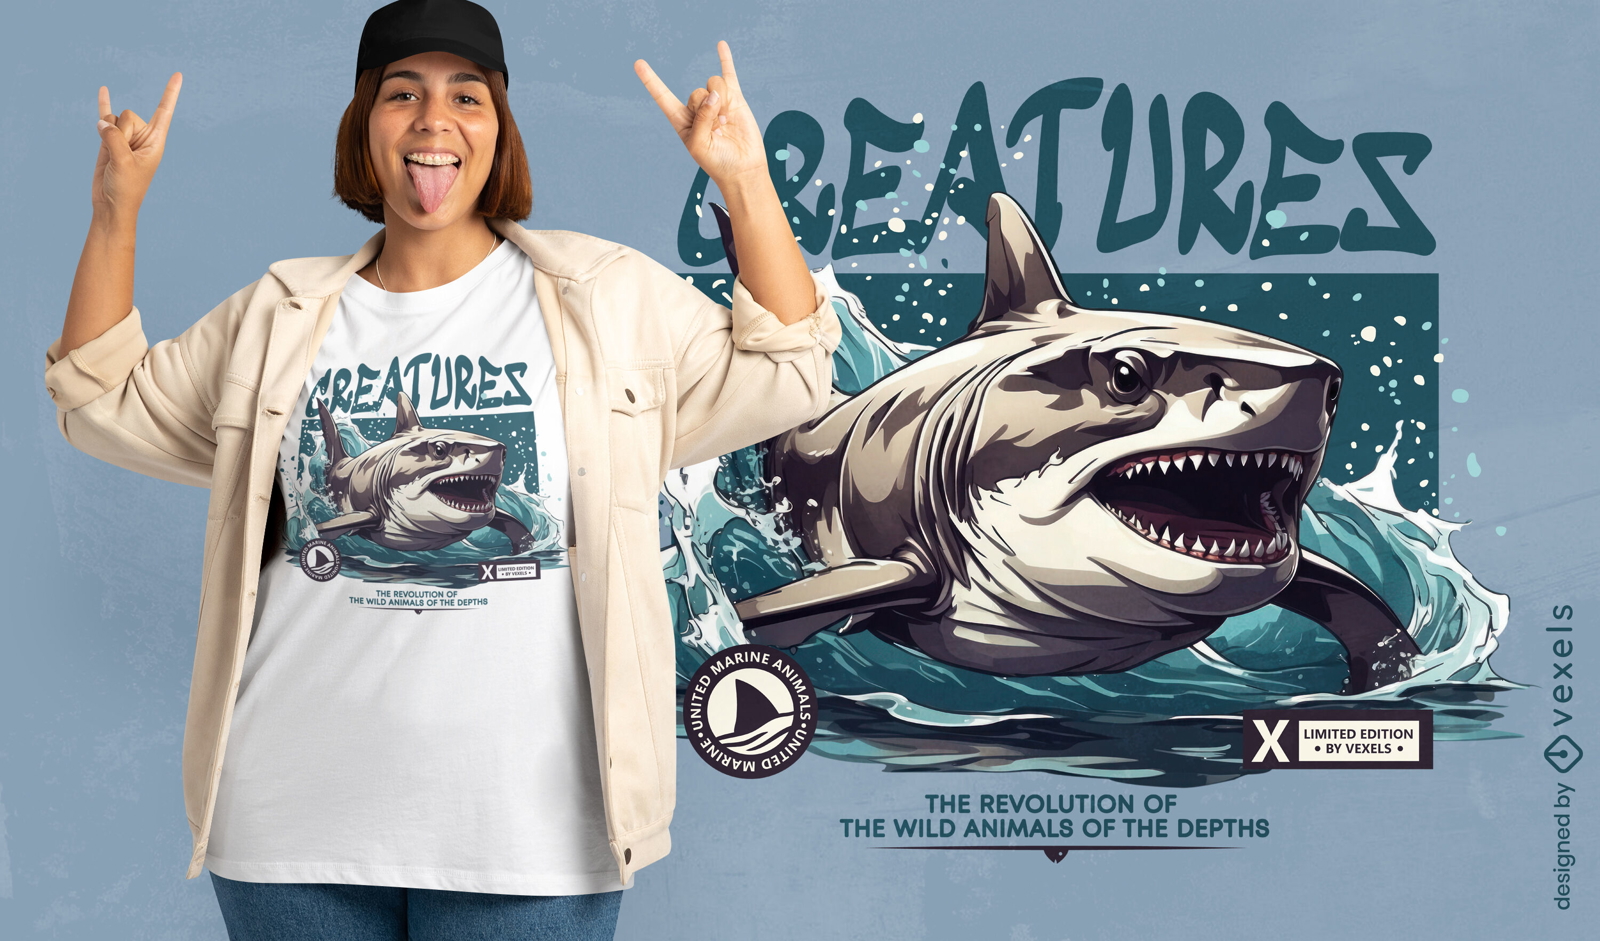 Shark creatures t-shirt design